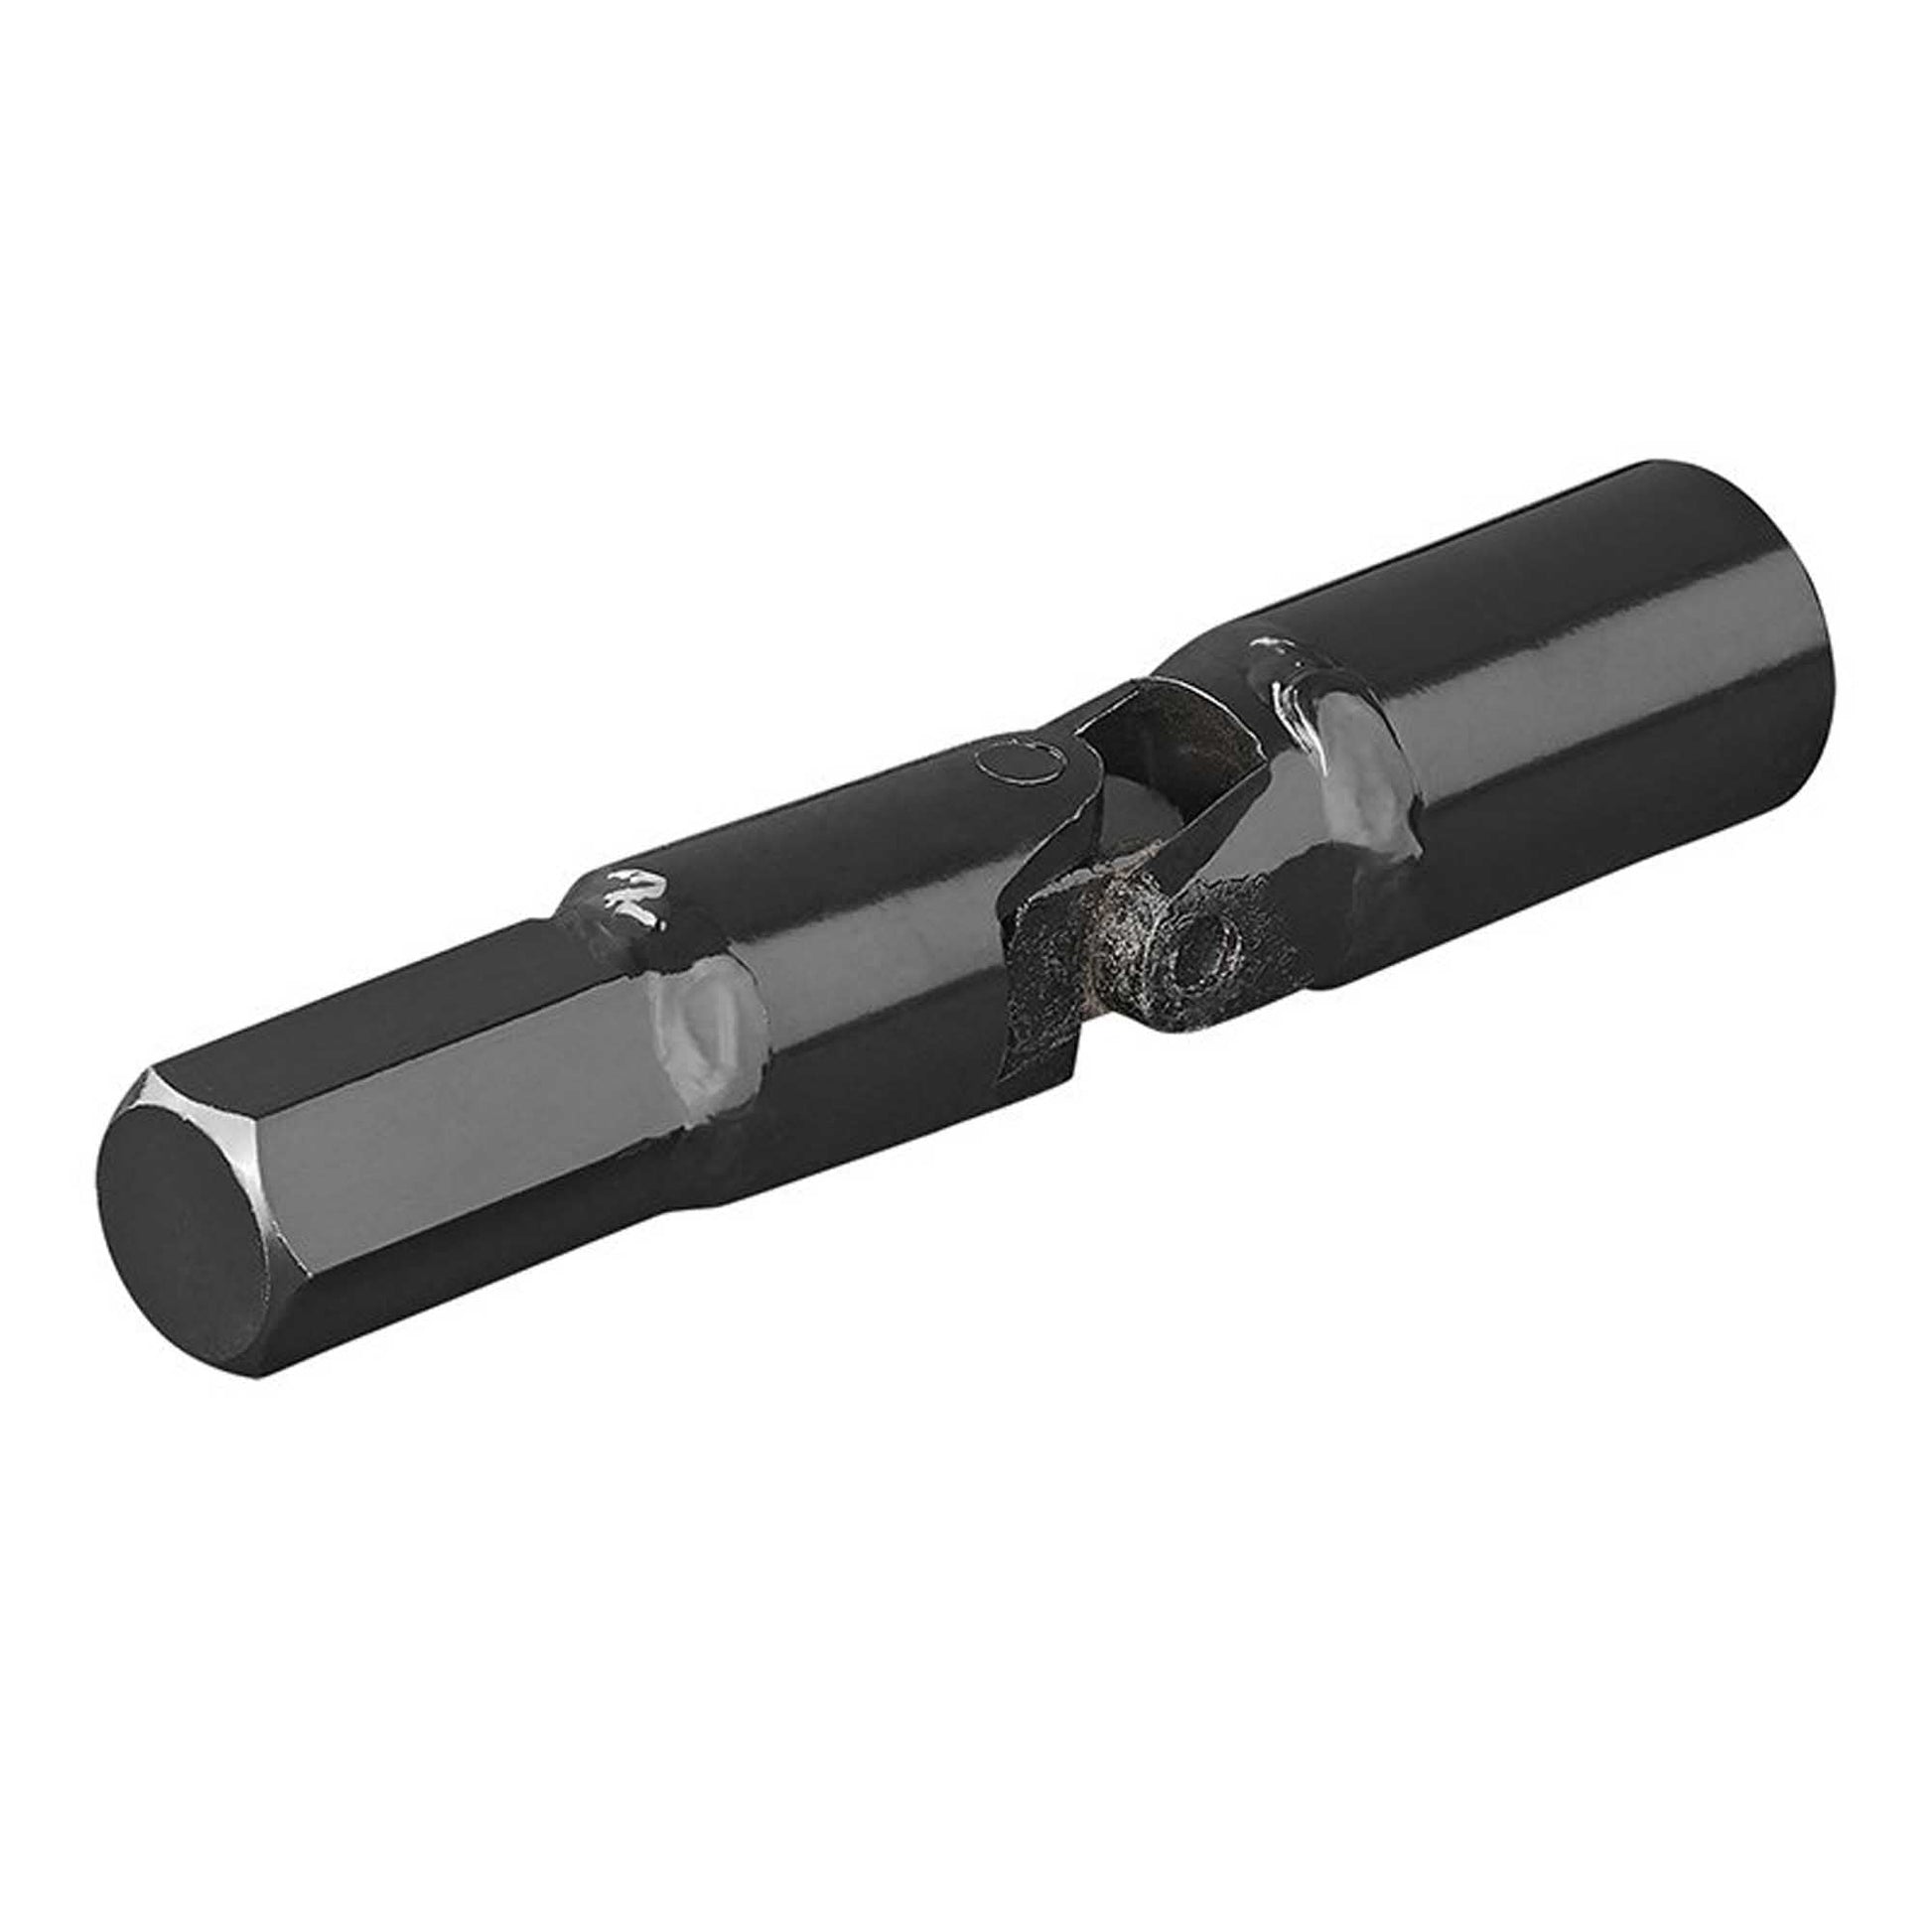 KoJackKardangelenk Adapter für Ausdrehstütze 19 mm - TMN-shop.de